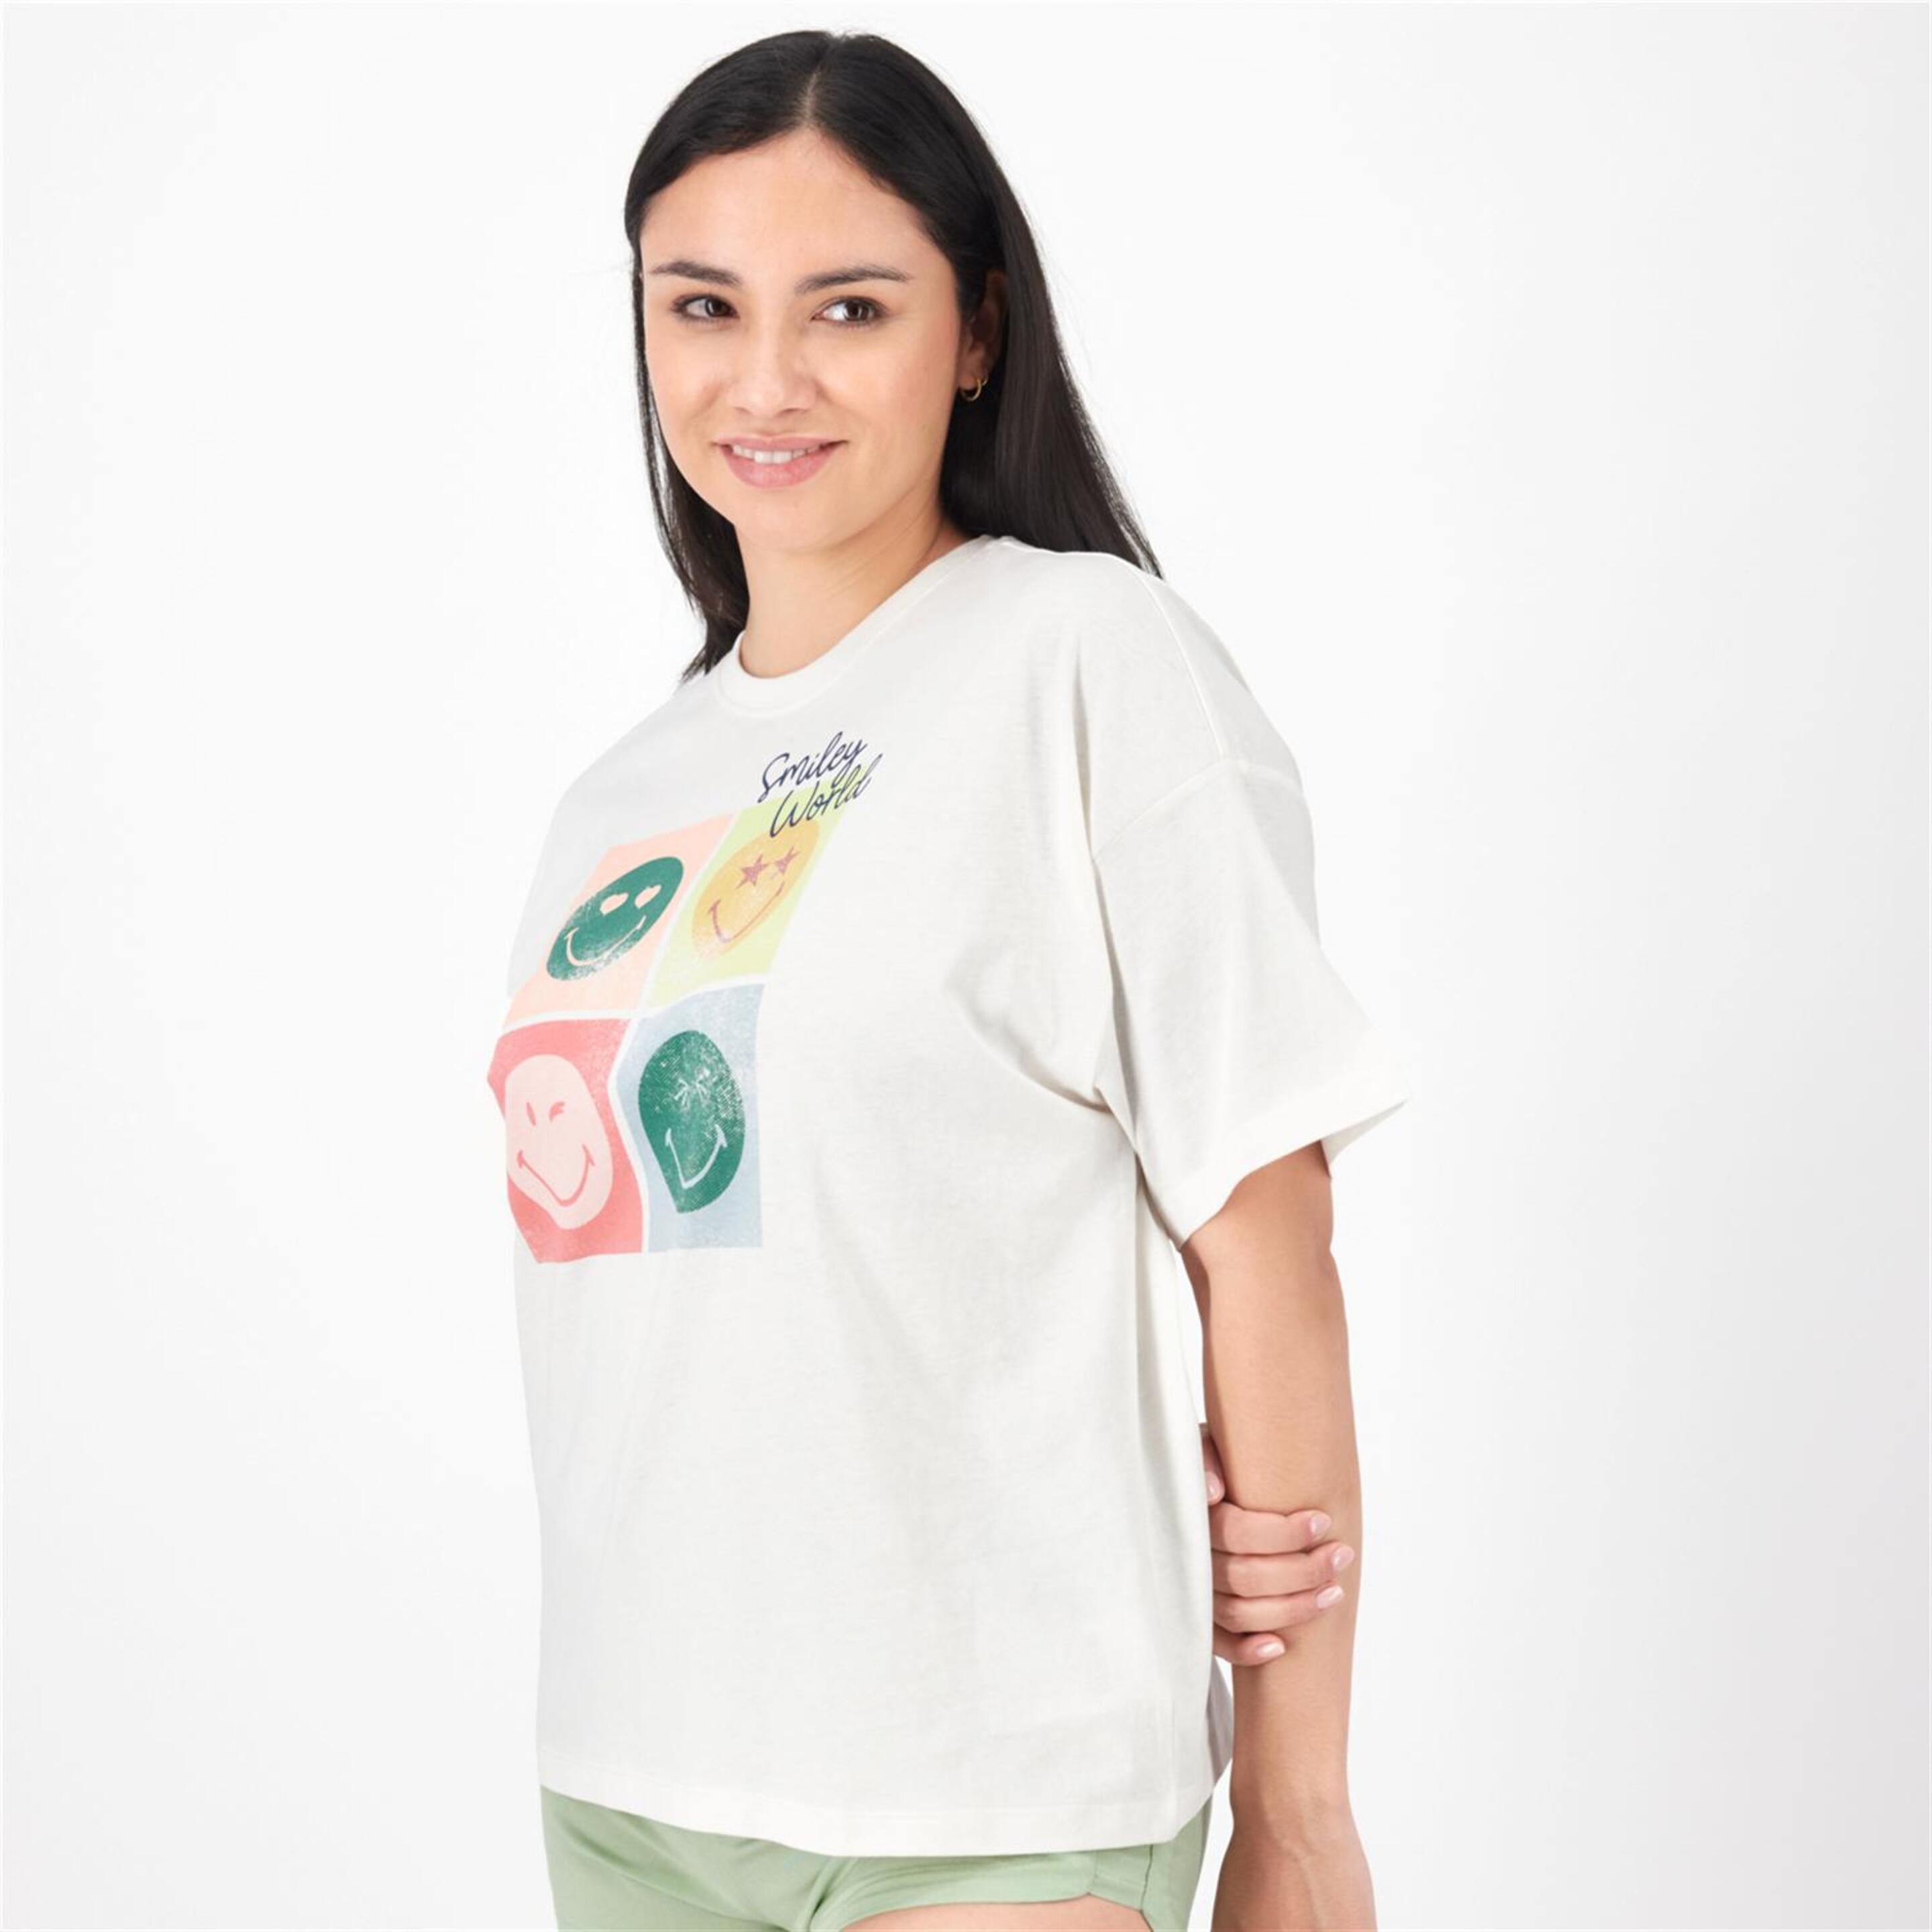 Camiseta SmileyWorld® - Blanco - Camiseta Oversize Mujer